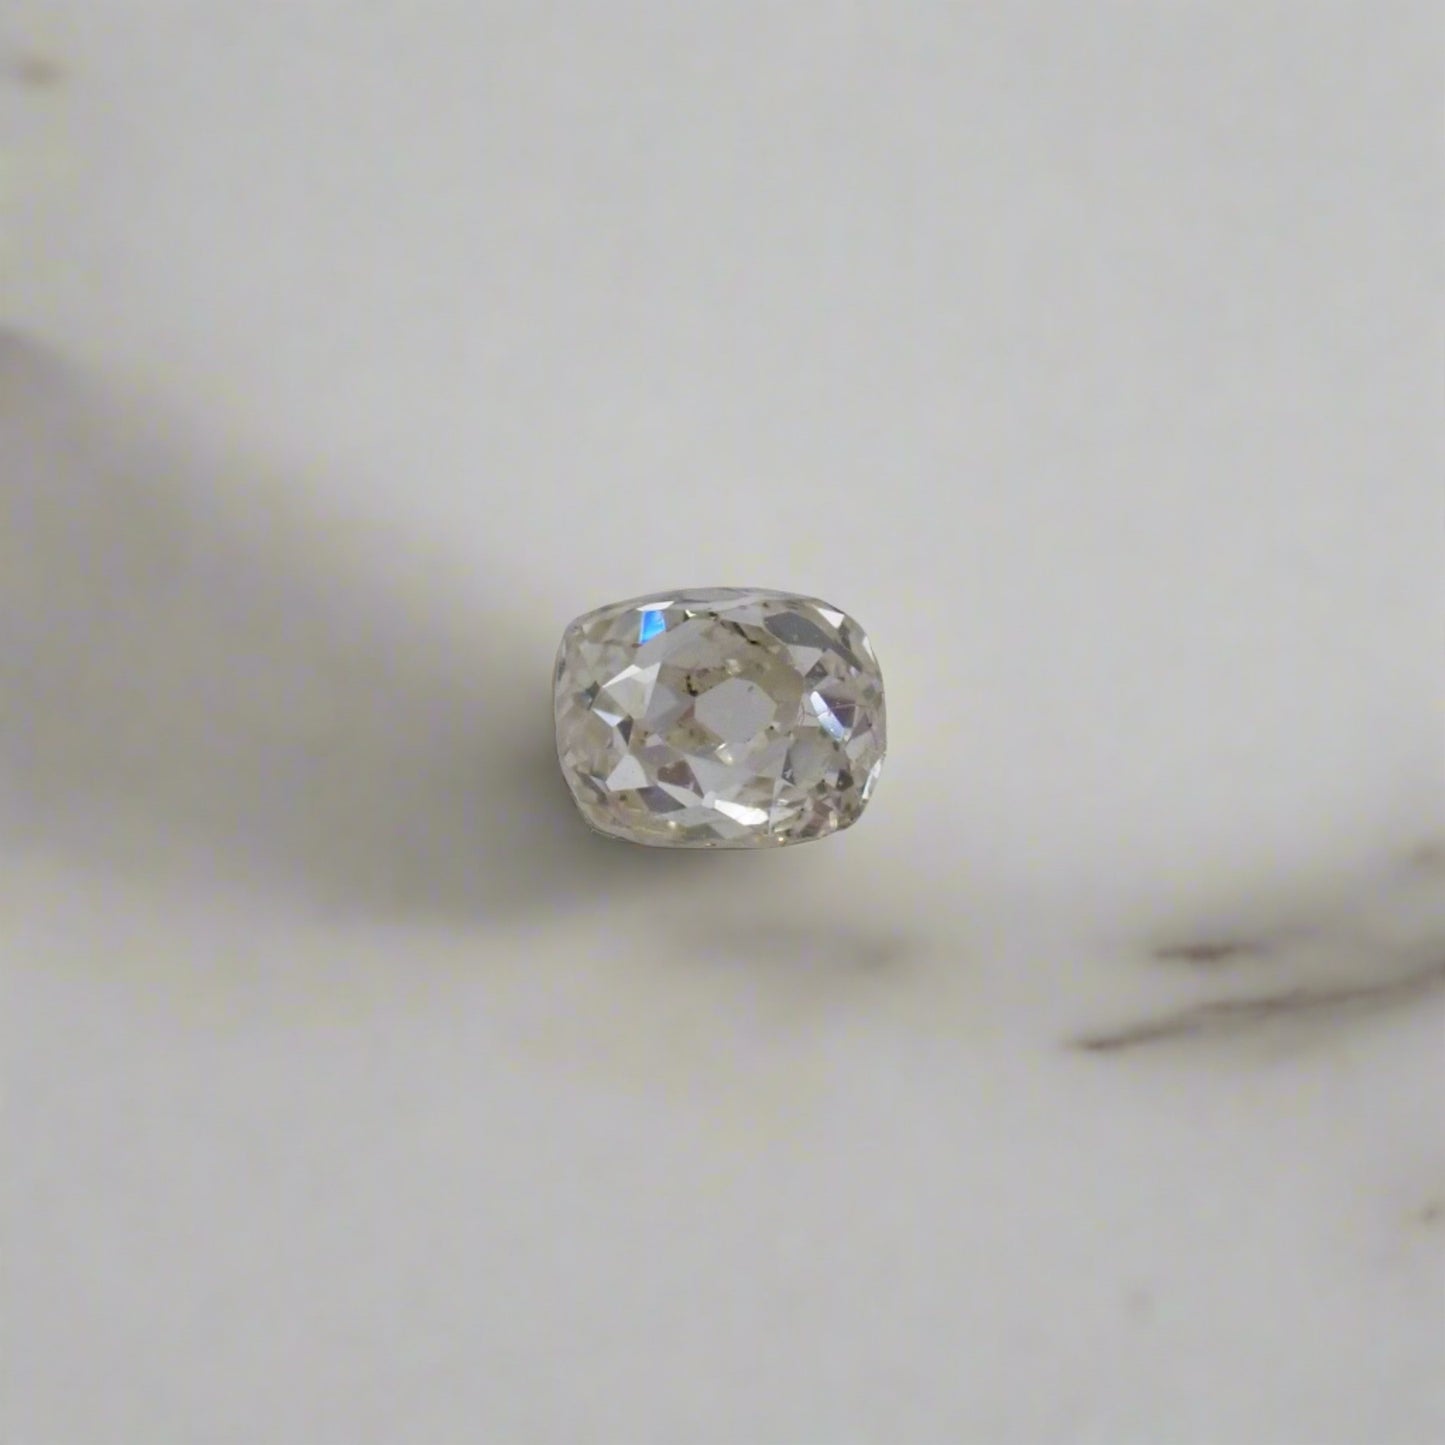 Antique Diamond - Old Cut 0.16ct (3.4x2.7mm)